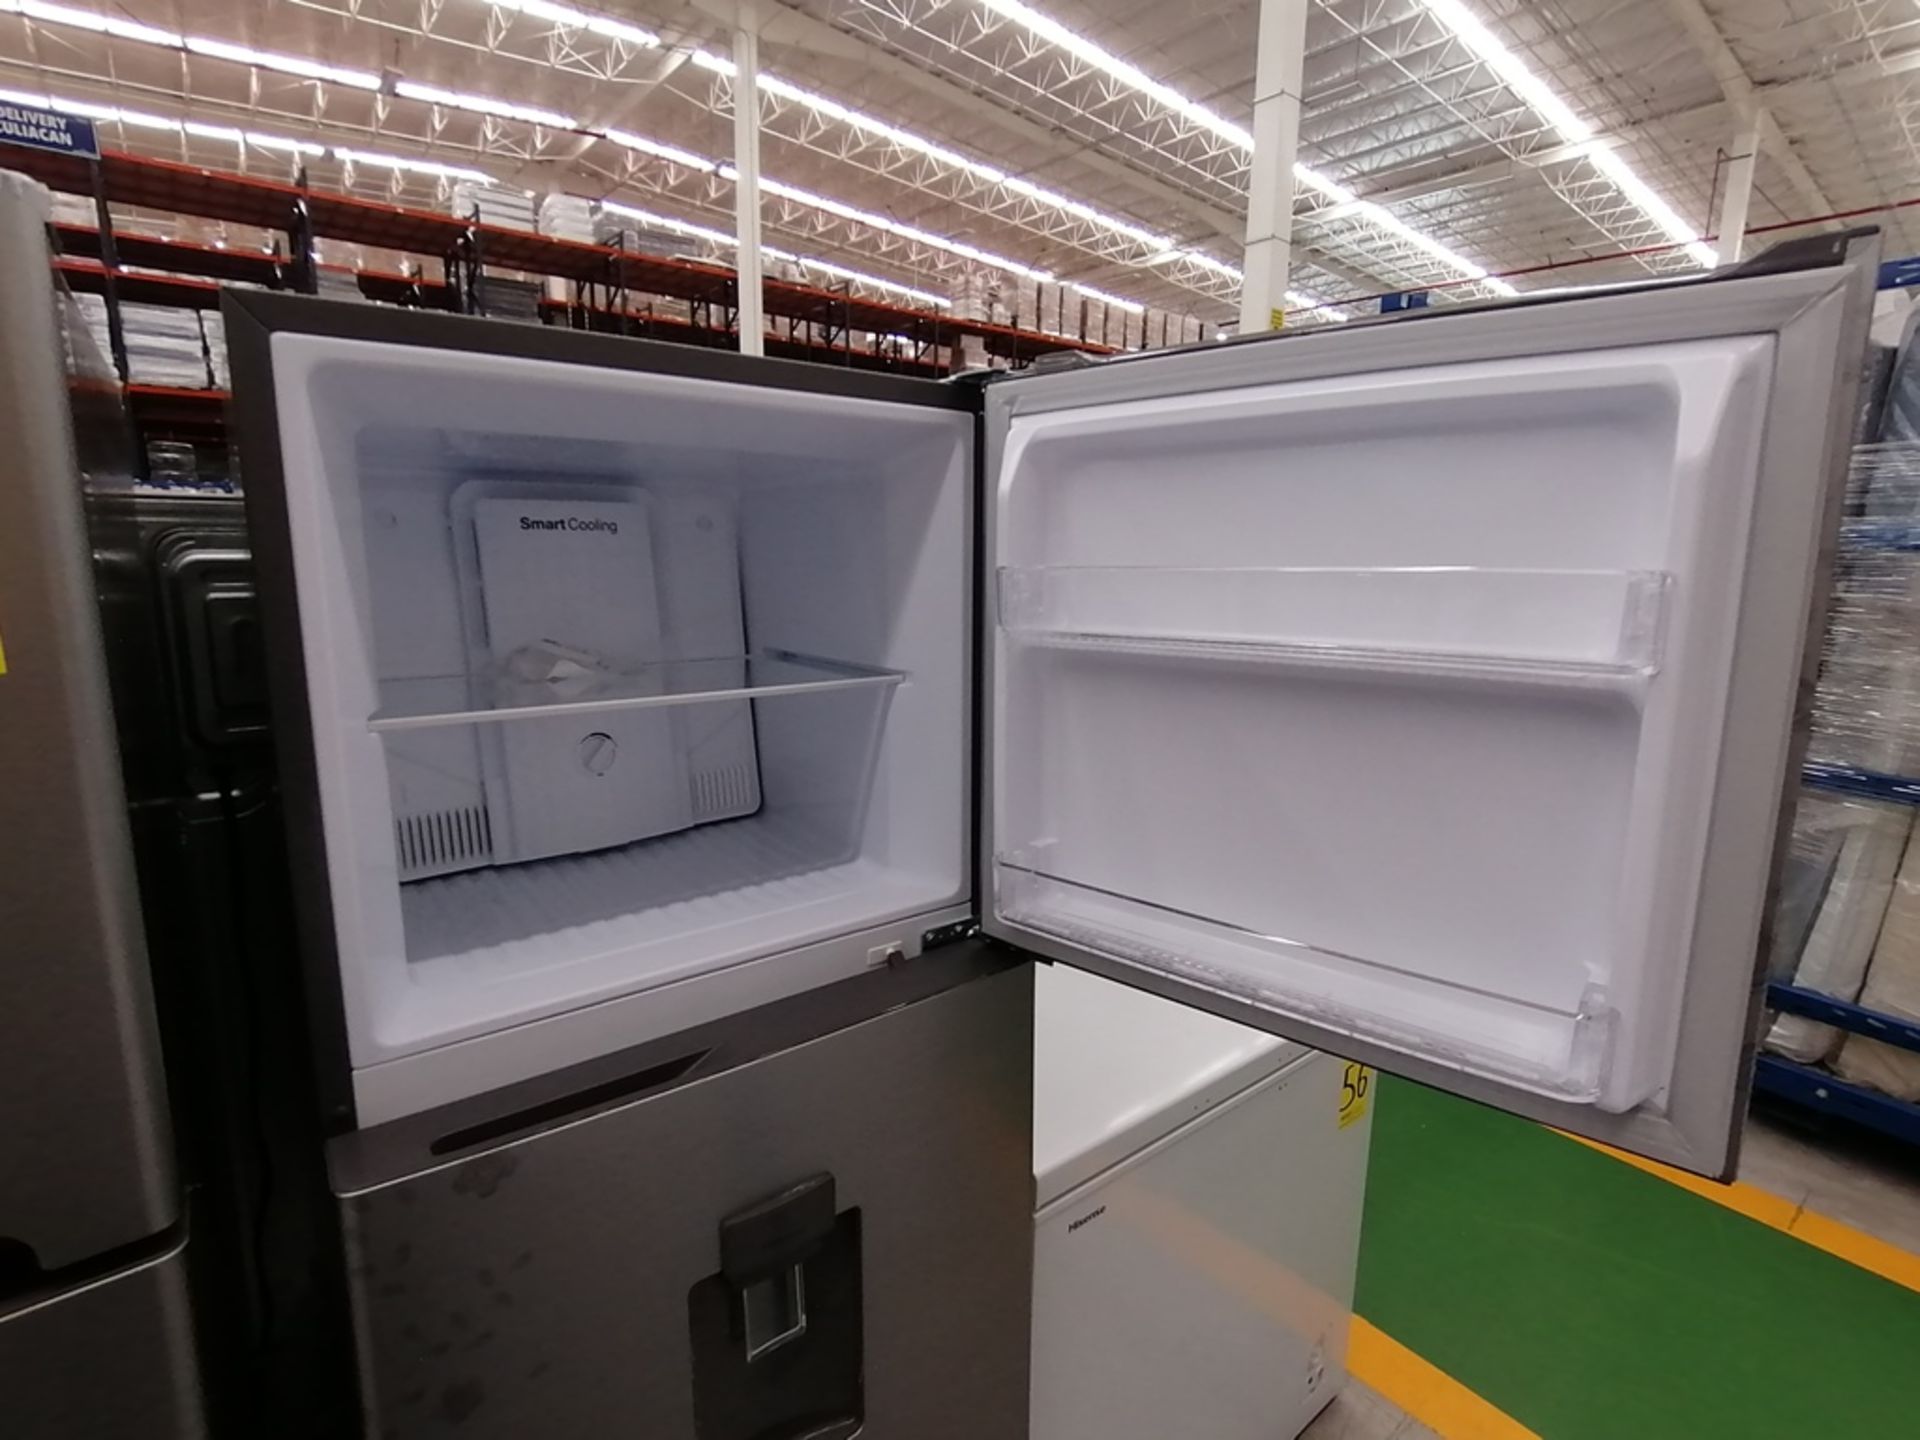 Lote de 2 refrigeradores incluye: 1 Refrigerador con dispensador de agua, Marca Winia, Modelo DFR40 - Image 4 of 17